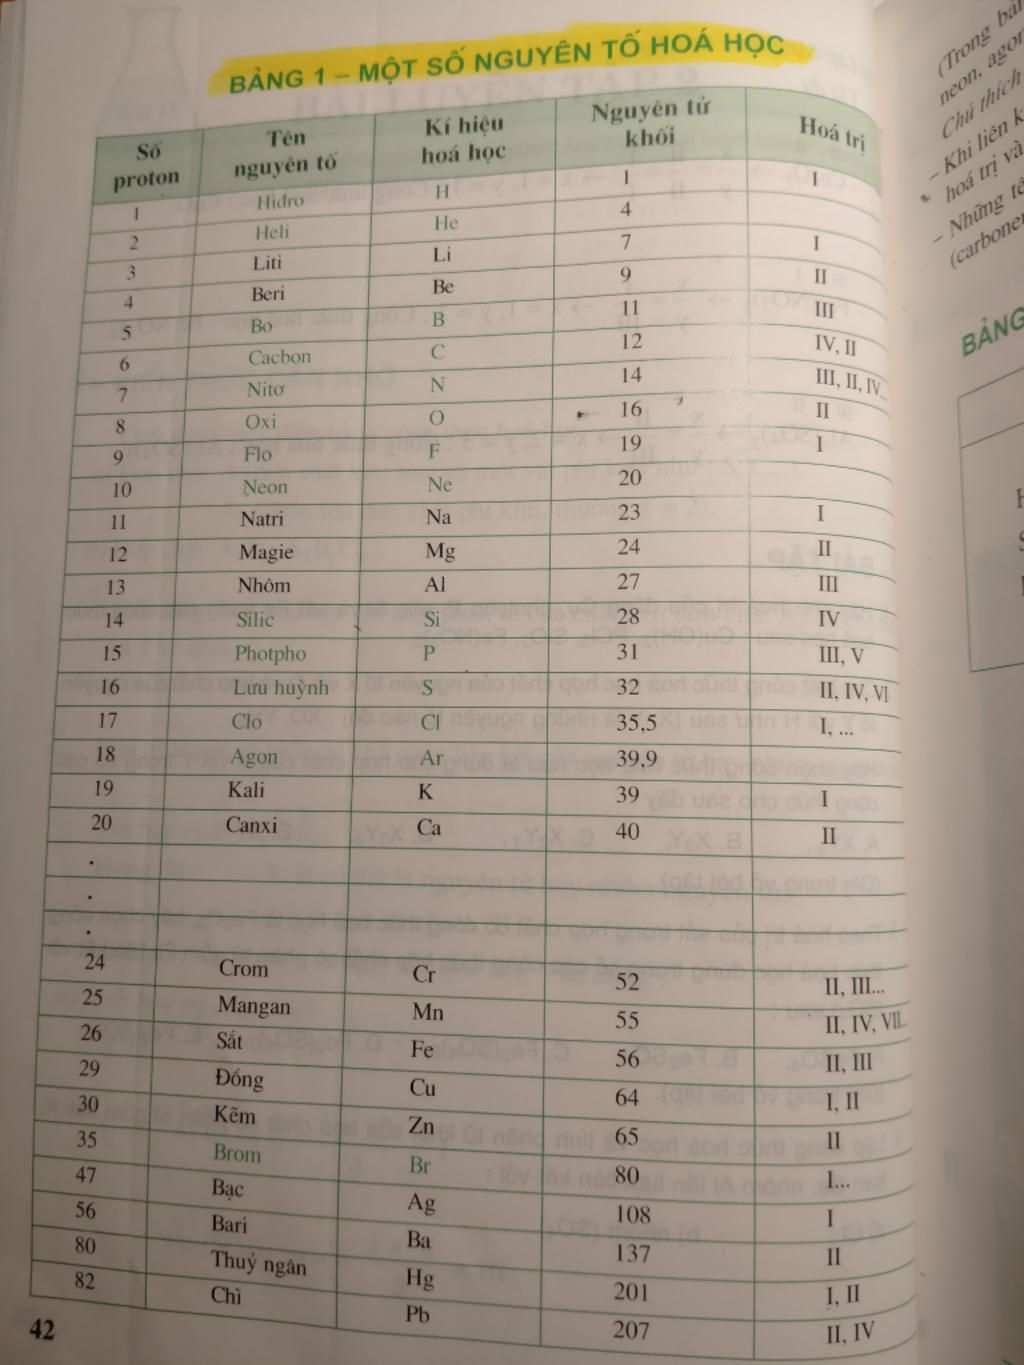 Viét bảng yếu tố chất hóa học k cần thiết viết lách hóa trị sgk hóa tám trang 42 em bị thất lạc sgk rồi thắc mắc 1198027 - hoidap247.com